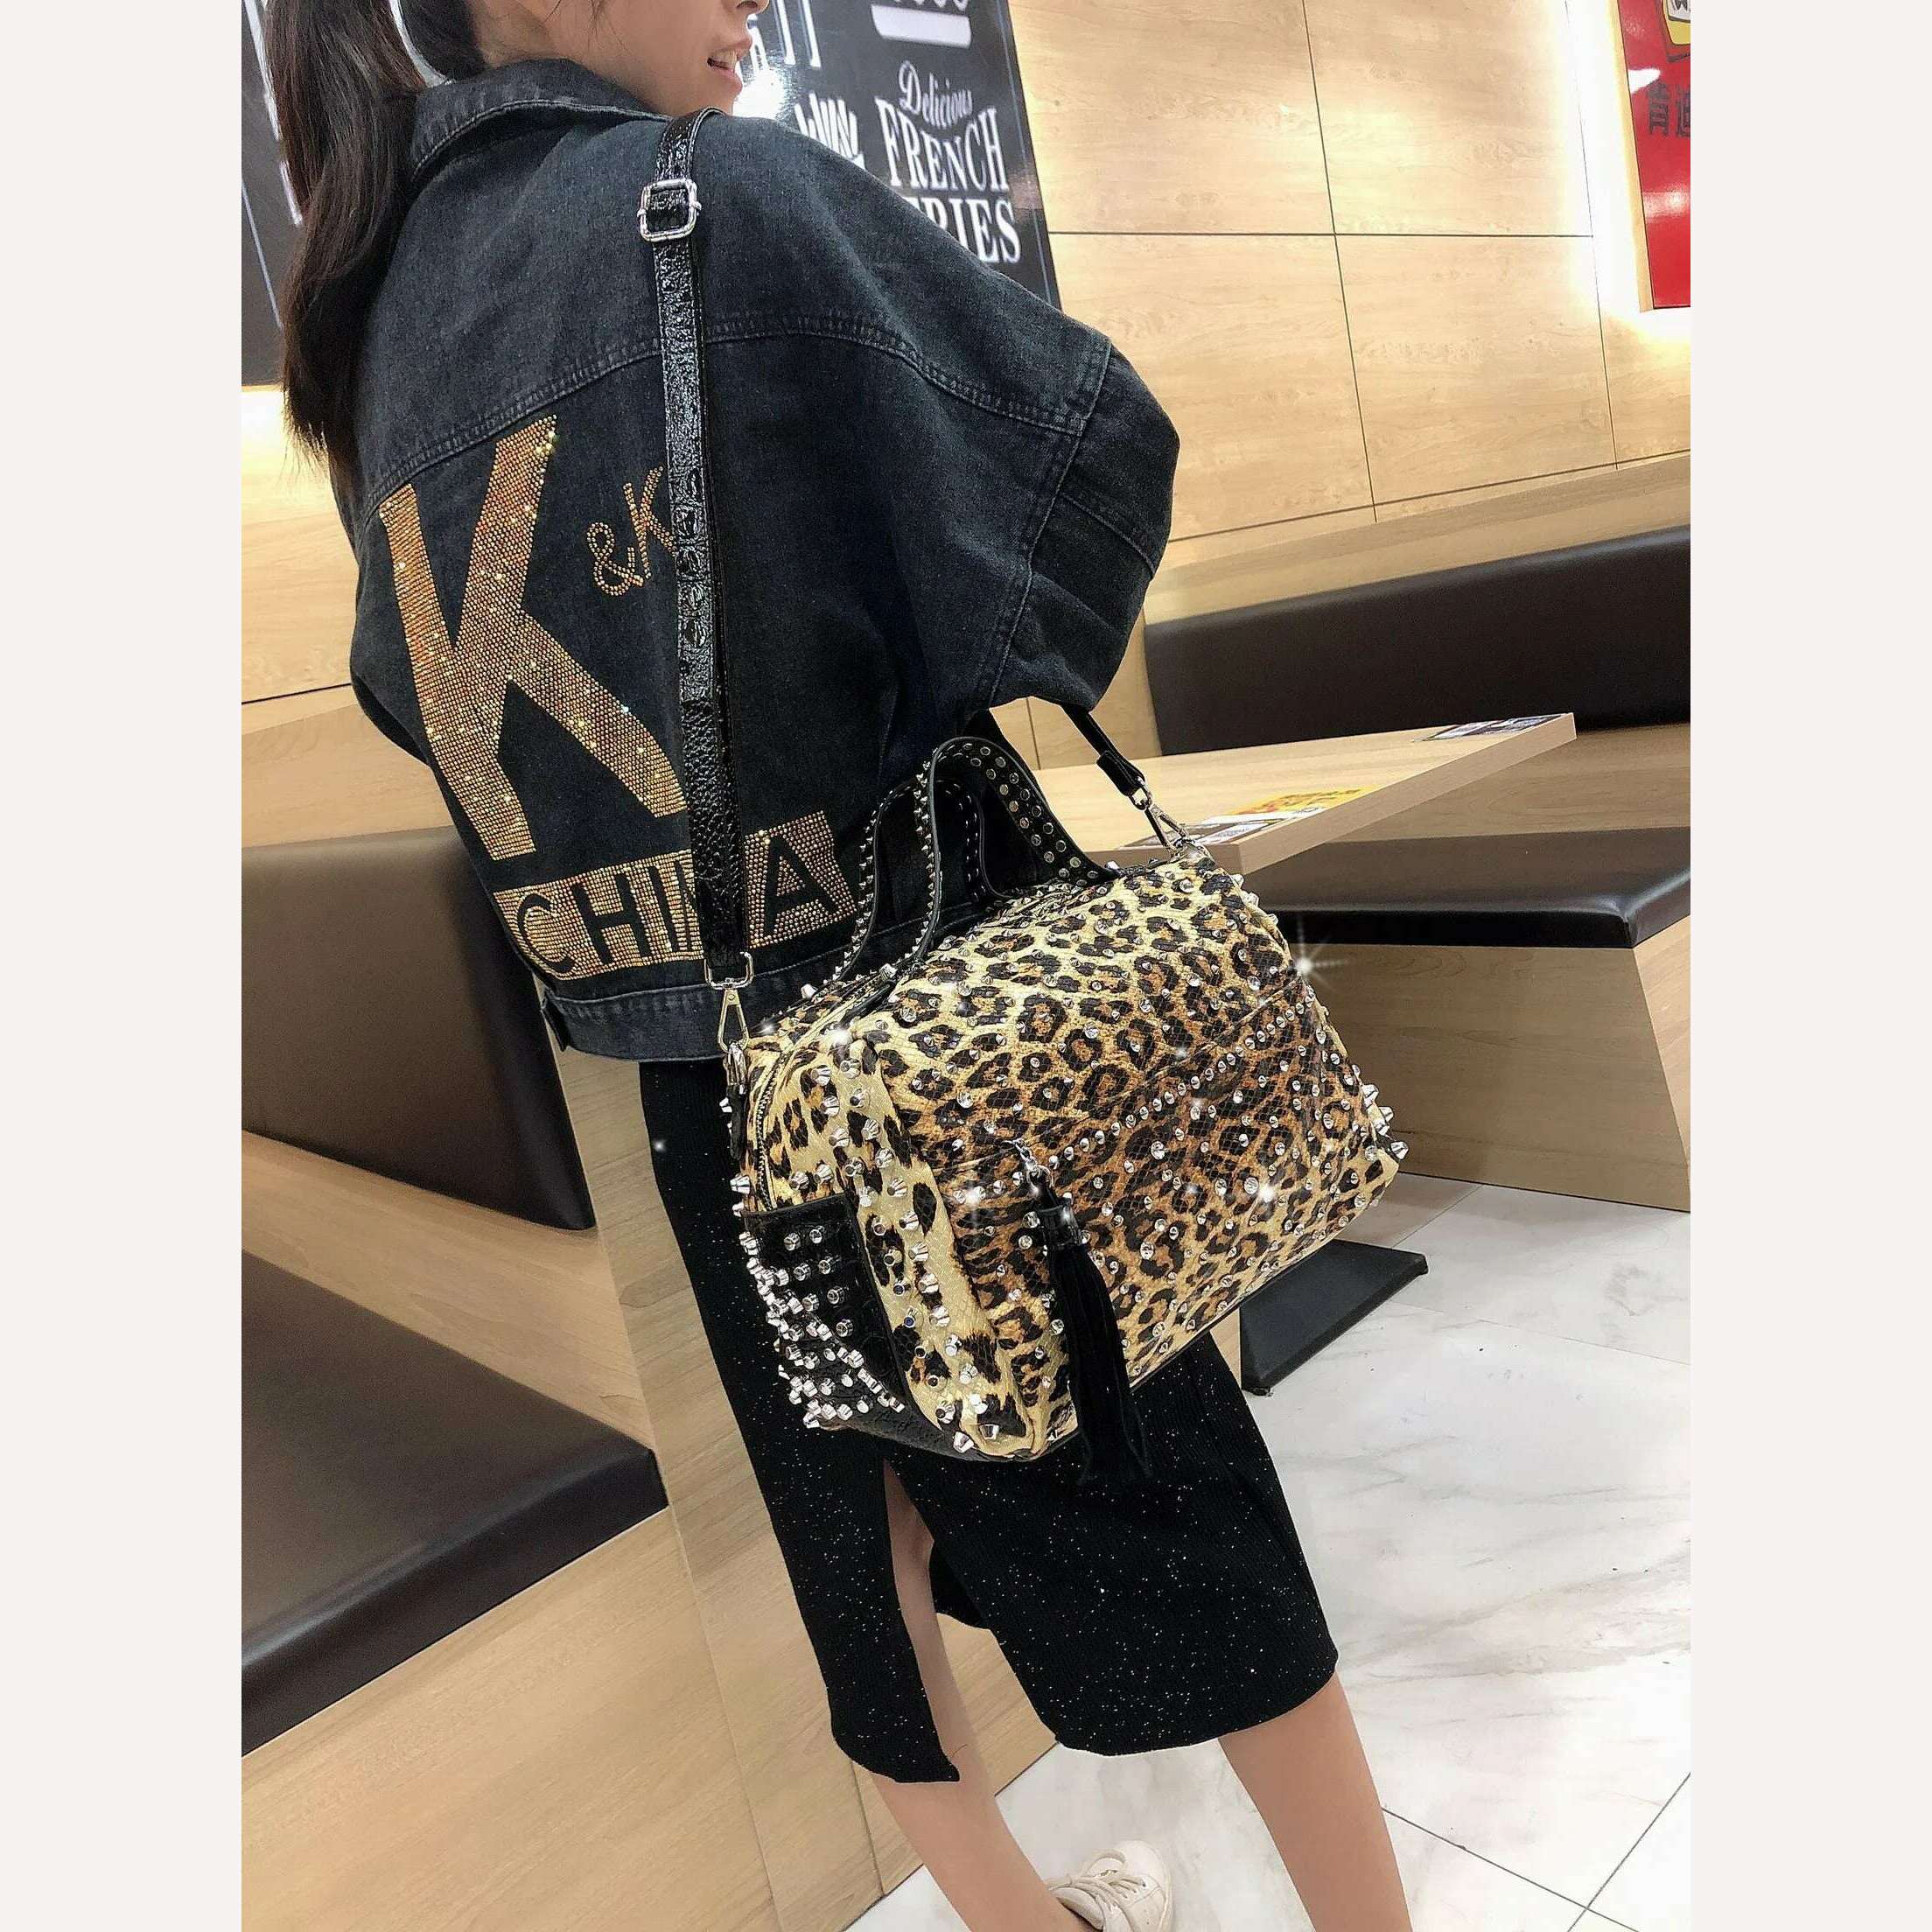 KIMLUD, New trend handbags personality fashion retro leopard rhinestone handbag rivet shoulder bag ladies casual handbag Messenger bag, KIMLUD Womens Clothes